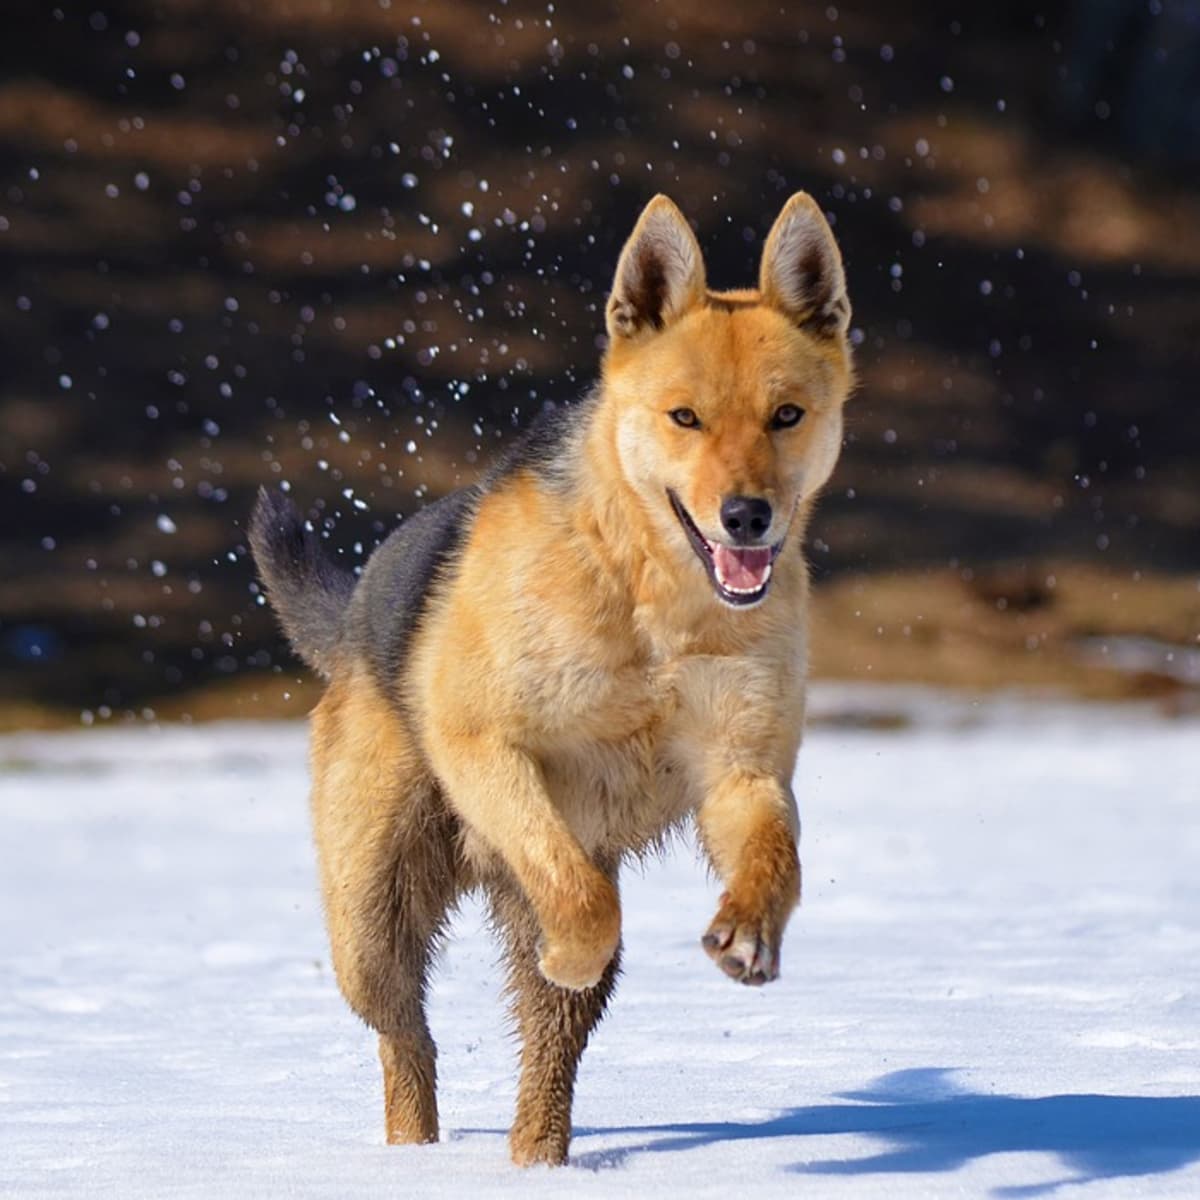 can you train a fox like a dog